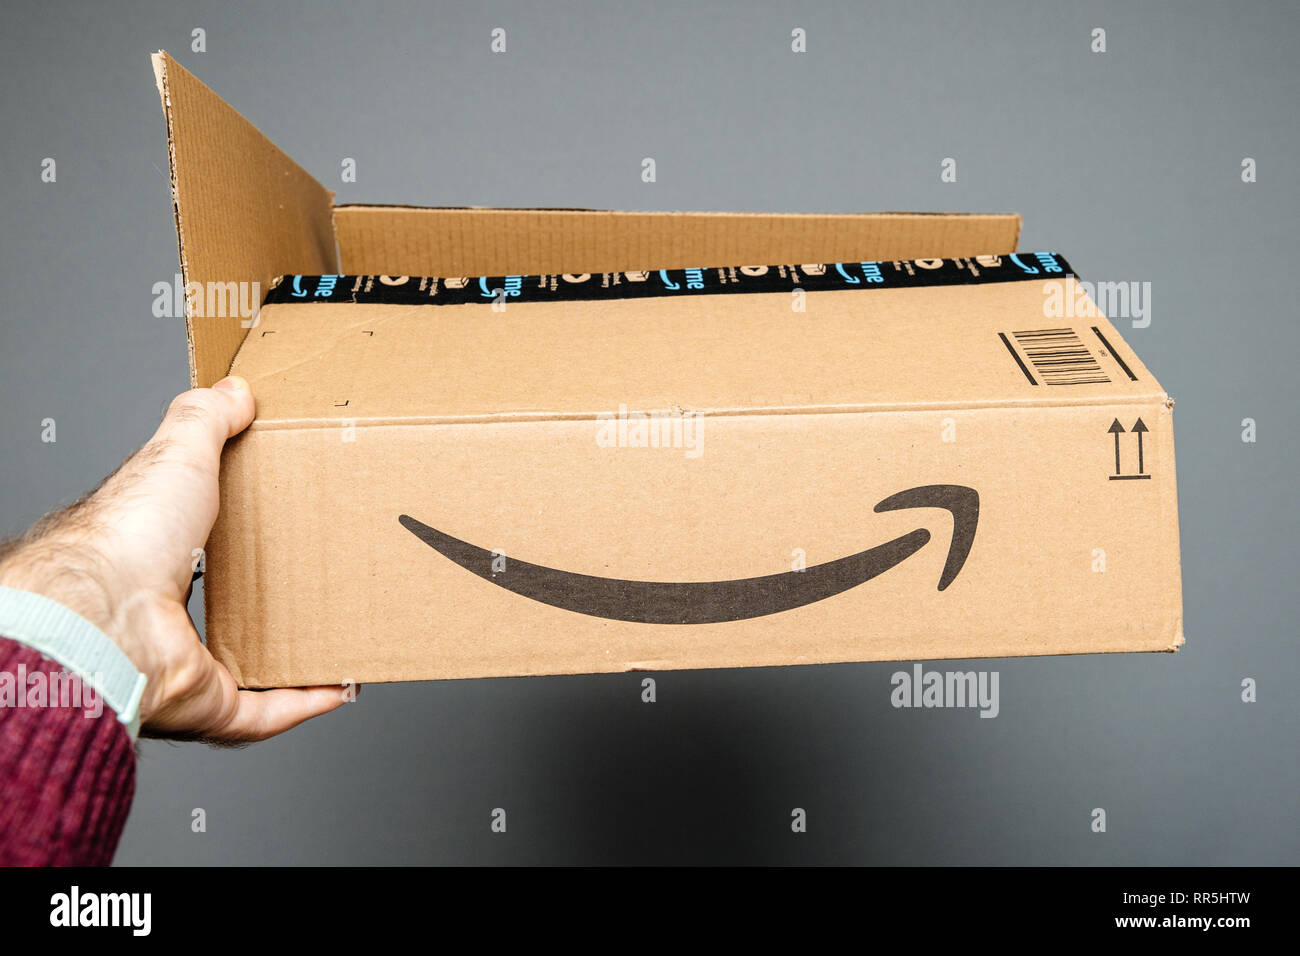 Paris, Frankreich, 23.Februar 2019: Mann, gegen den grauen Hintergrund  Amazon Prime Karton mit Smile Amazon Pfeil Schriftzug geöffnet  Stockfotografie - Alamy